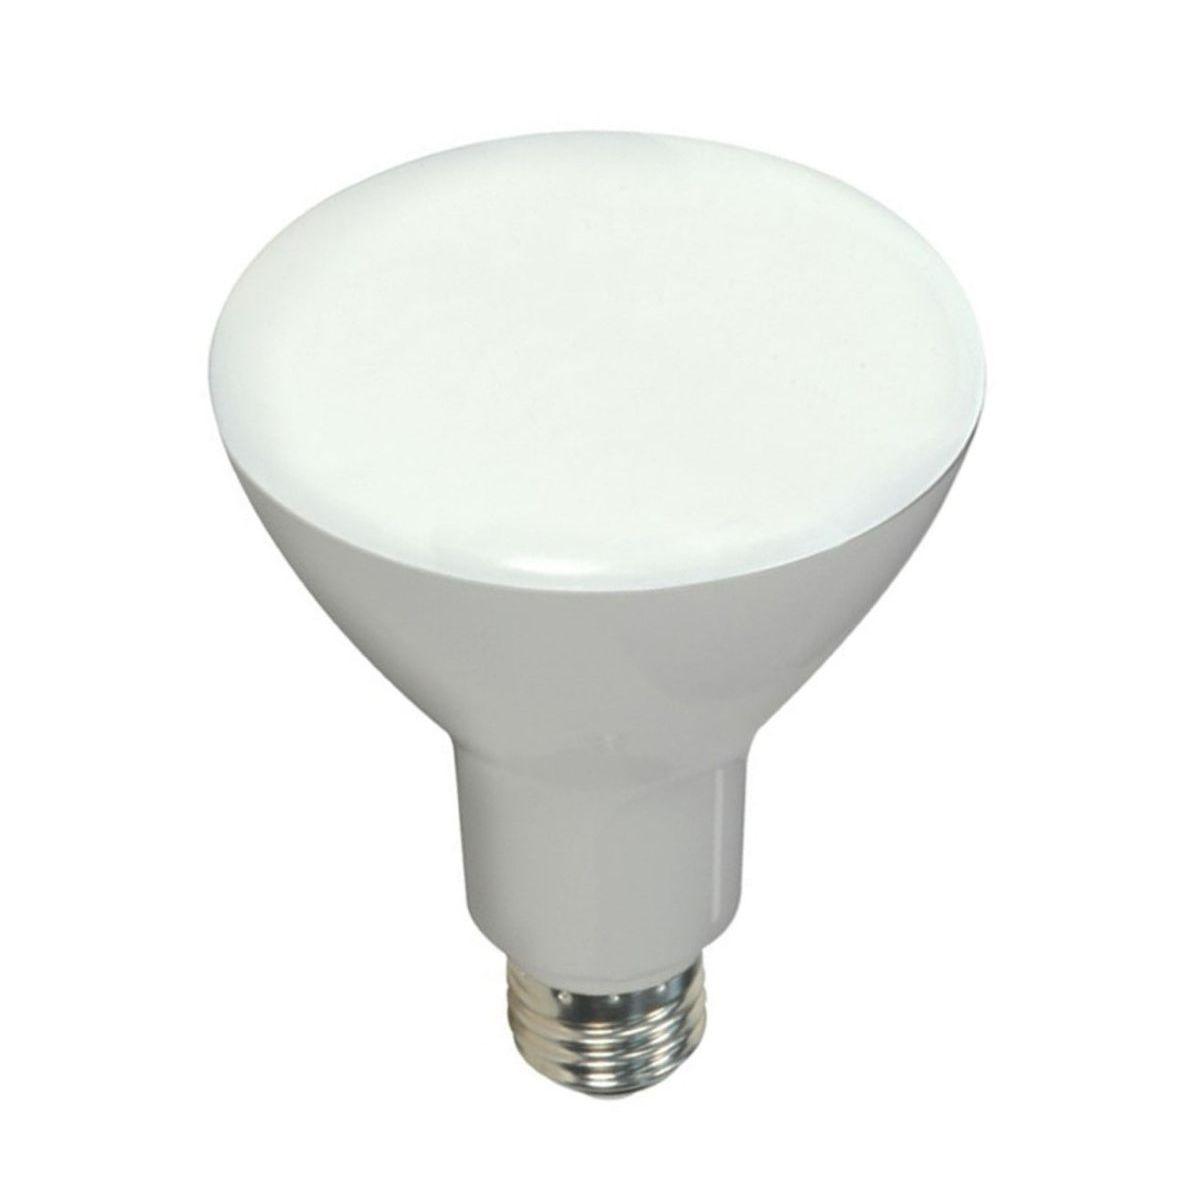 LED R30/BR30 Reflector bulb, 10 watt, 650 Lumens, 2700K, E26 Medium Base, 105 Deg. Flood, Dimmable - Bees Lighting